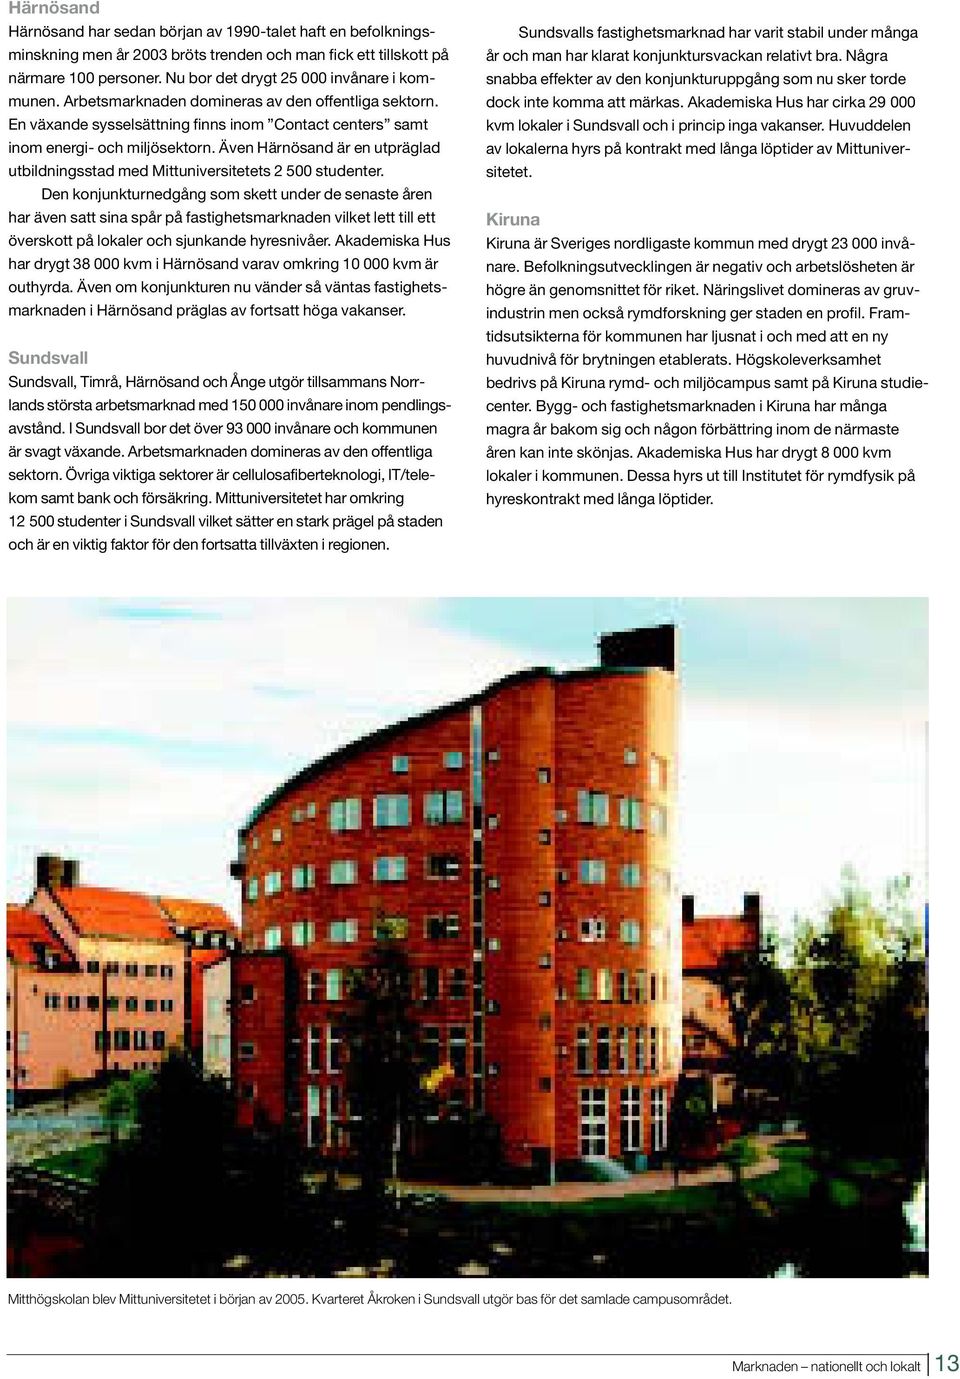 Även Härnösand är en utpräglad utbildningsstad med Mittuniversitetets 2 500 studenter.